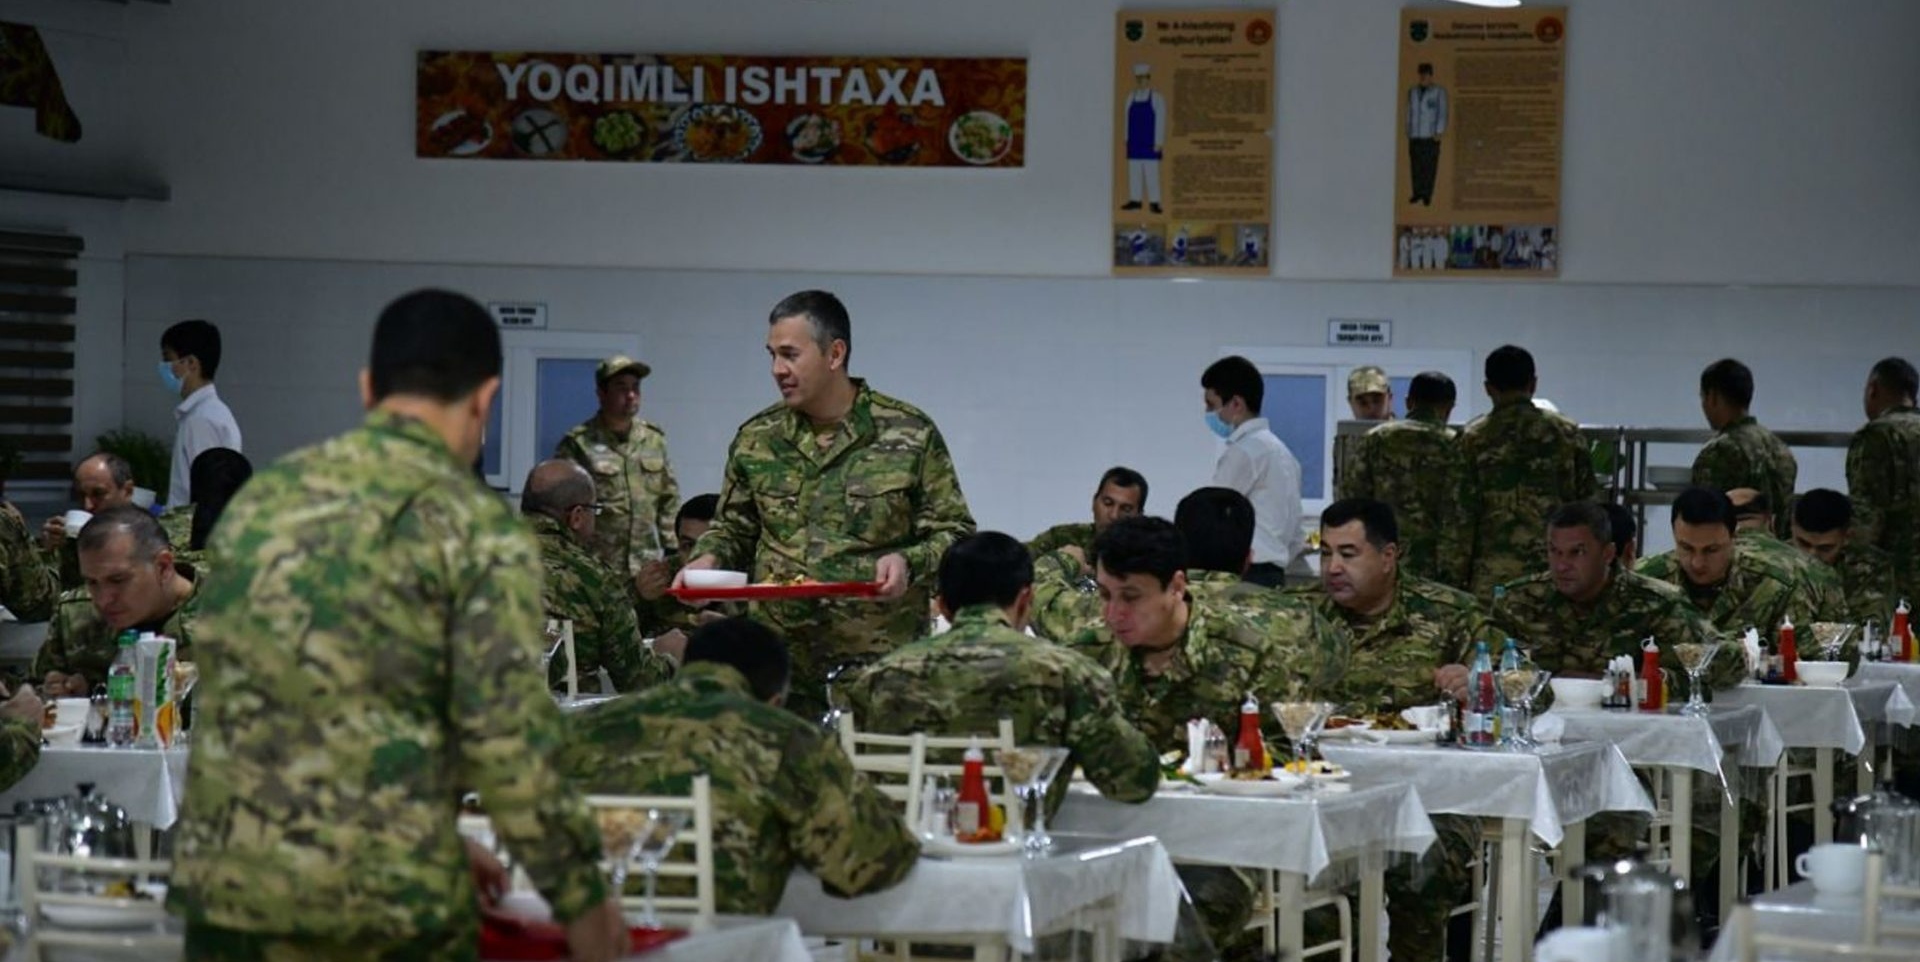 Военный сбор руководителей органов государственного управления, министерств и ведомств Узбекистана, хокимиятов, хозяйственных объединений и других организаций.